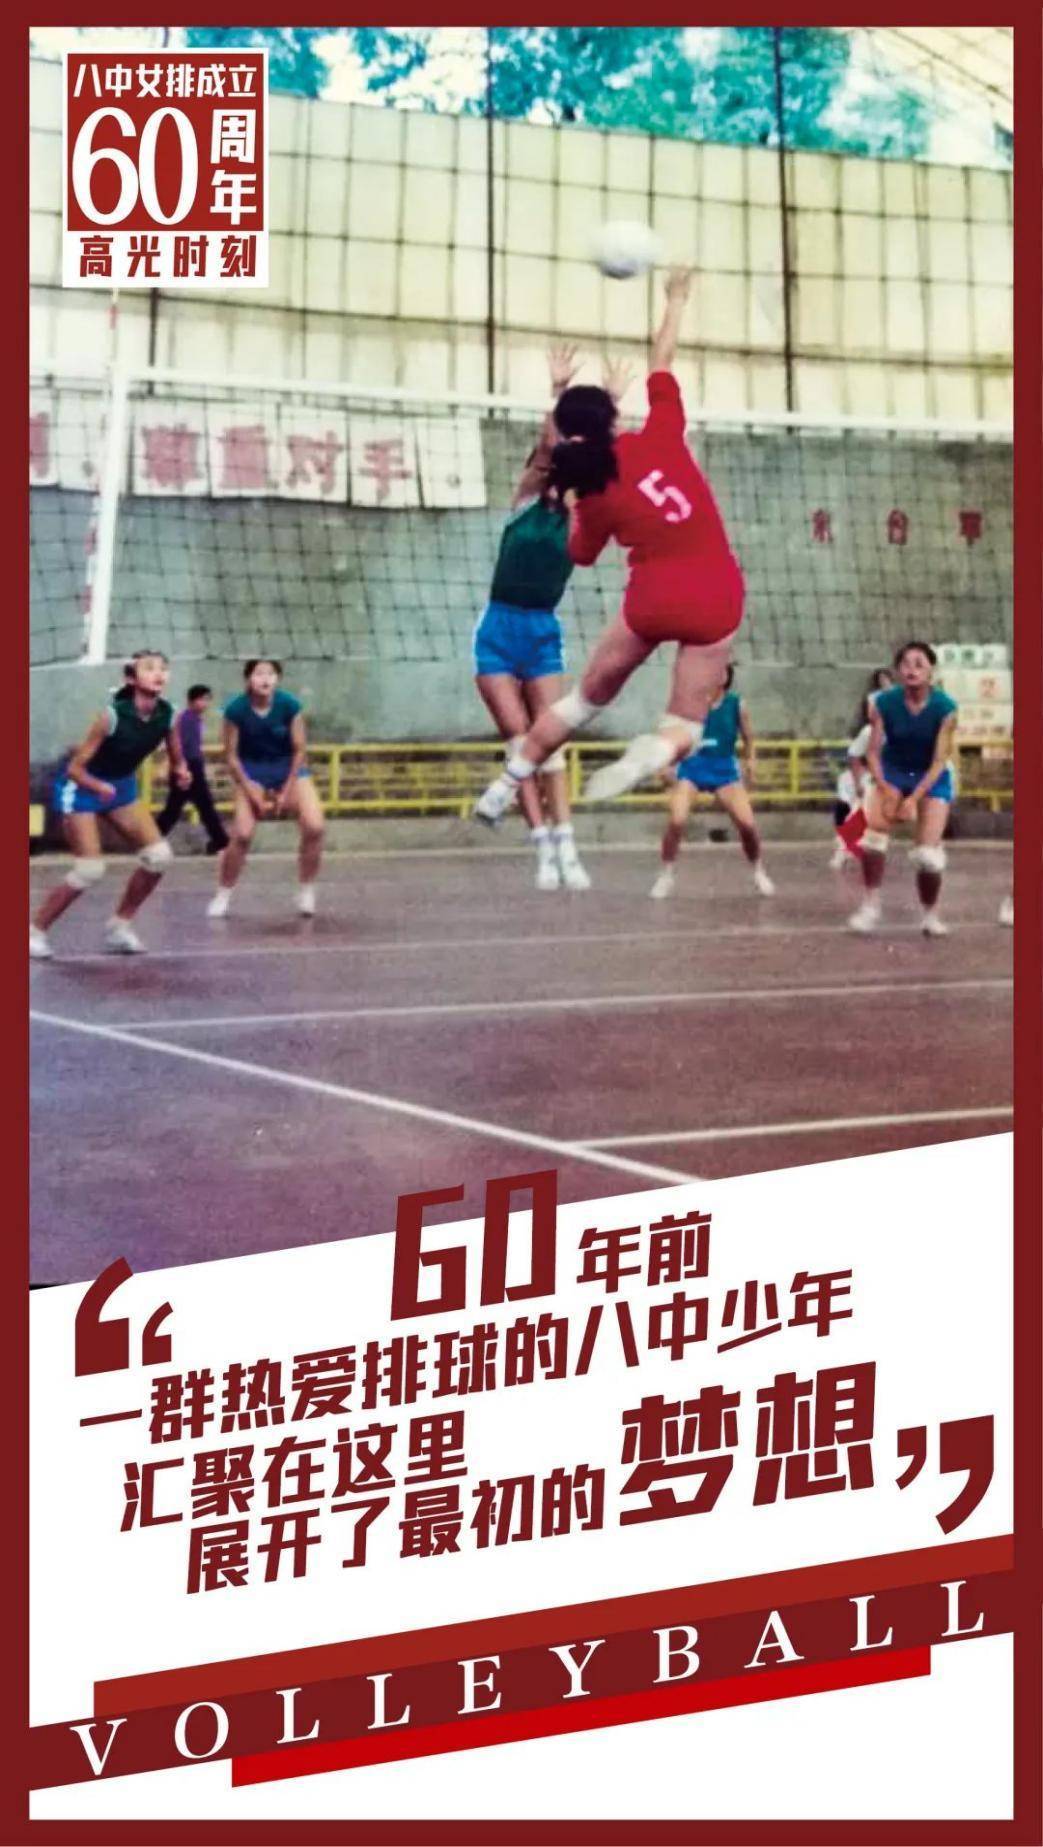 高中|市级锦标赛双冠军 重庆八中女排续写赛场佳话